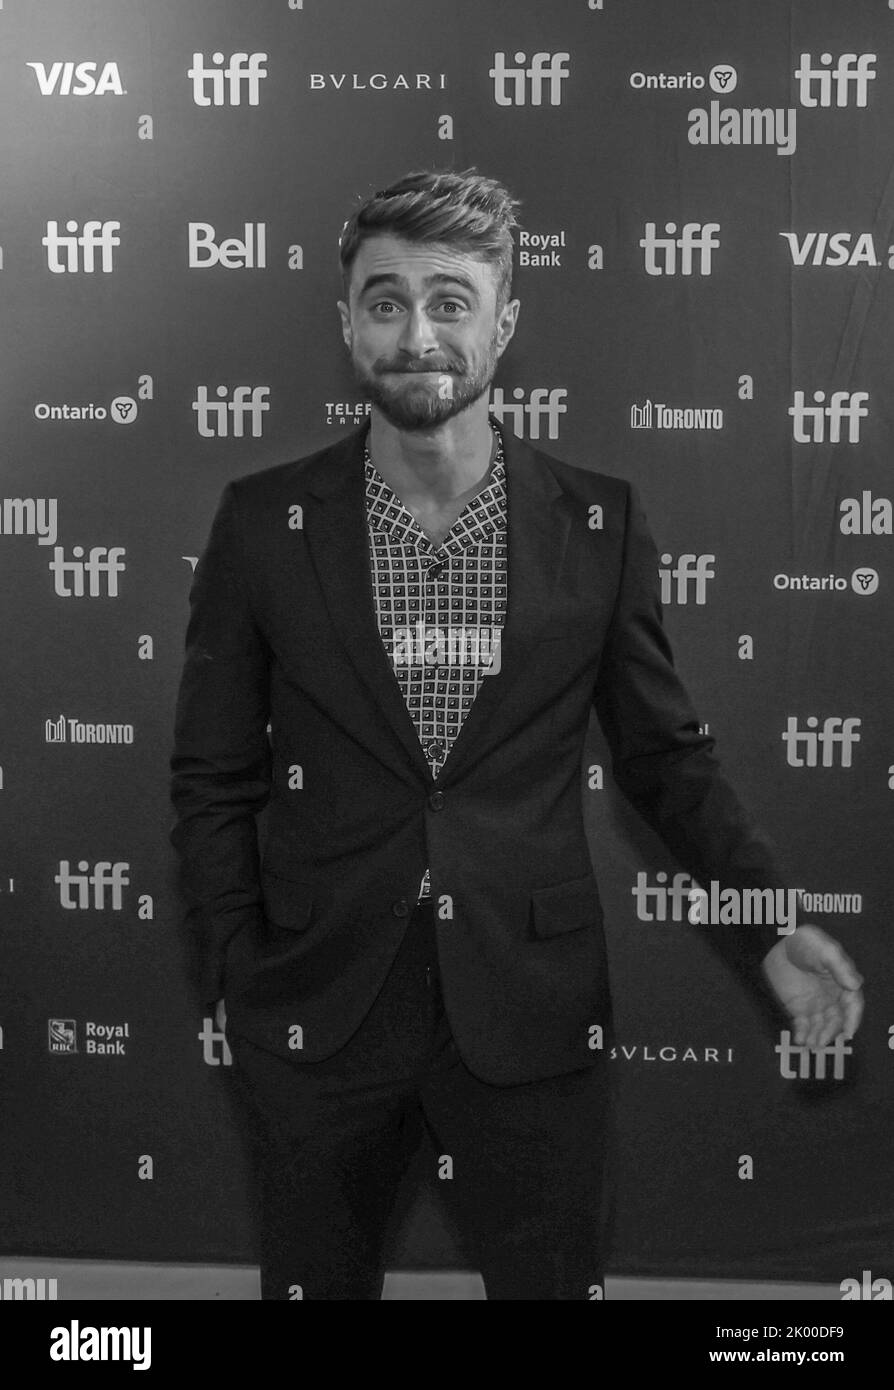 Daniel Radcliffe partecipa all'evento Red Carpet del Toronto International Film Festival per il film "Weird: The al Yankovic Story" al Royal Alexandra Theatre di Toronto. Foto Stock